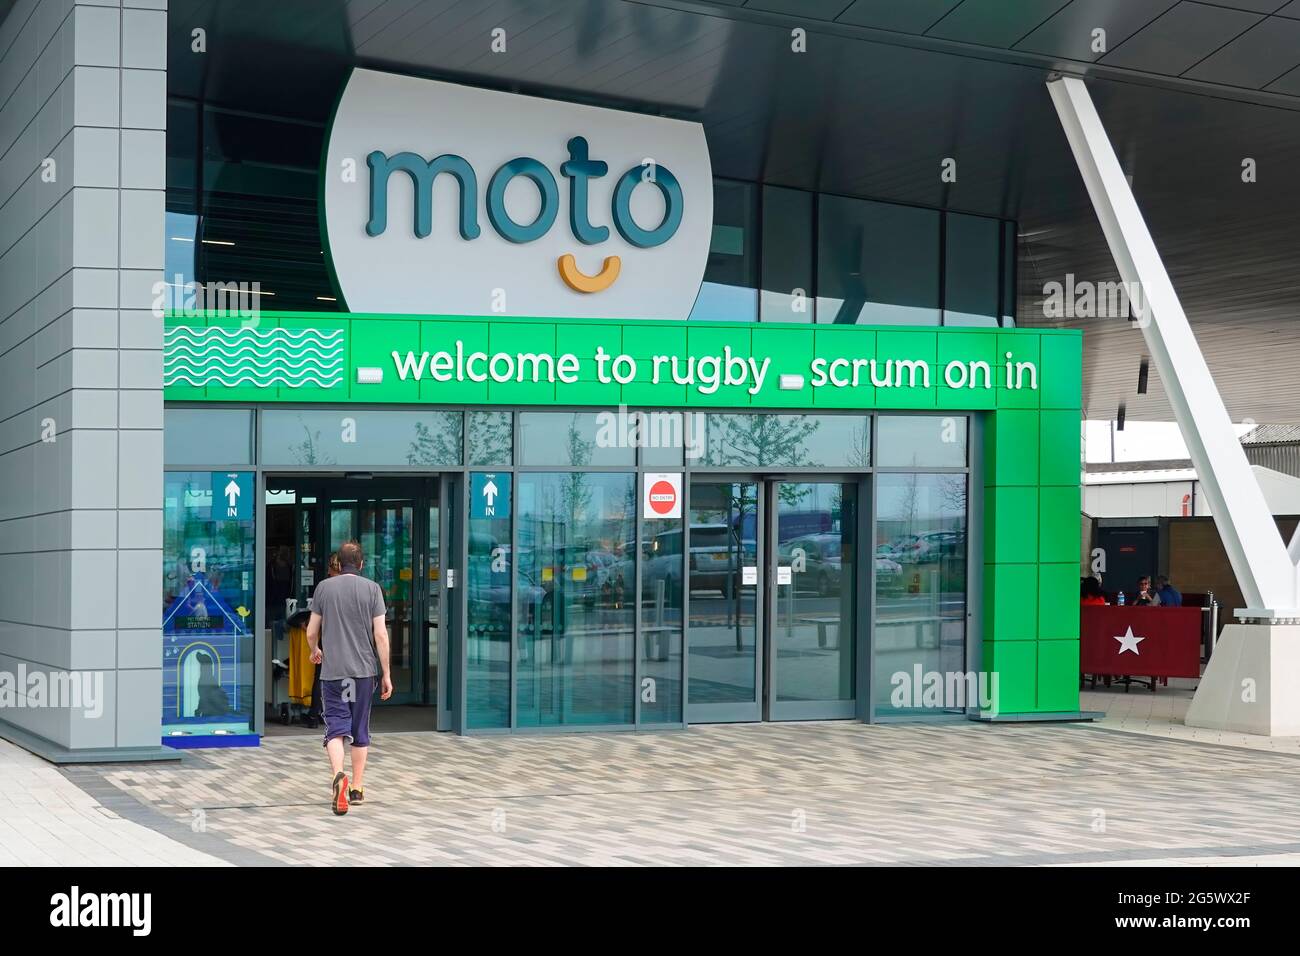 Eingang & Willkommensschild auf der neuen Autobahn Moto Rugby M6, Geschäfte & Toilettenanlagen, Einschränkungen der Pandemie von Covid, an der Stelle Warwickshire England, Großbritannien Stockfoto